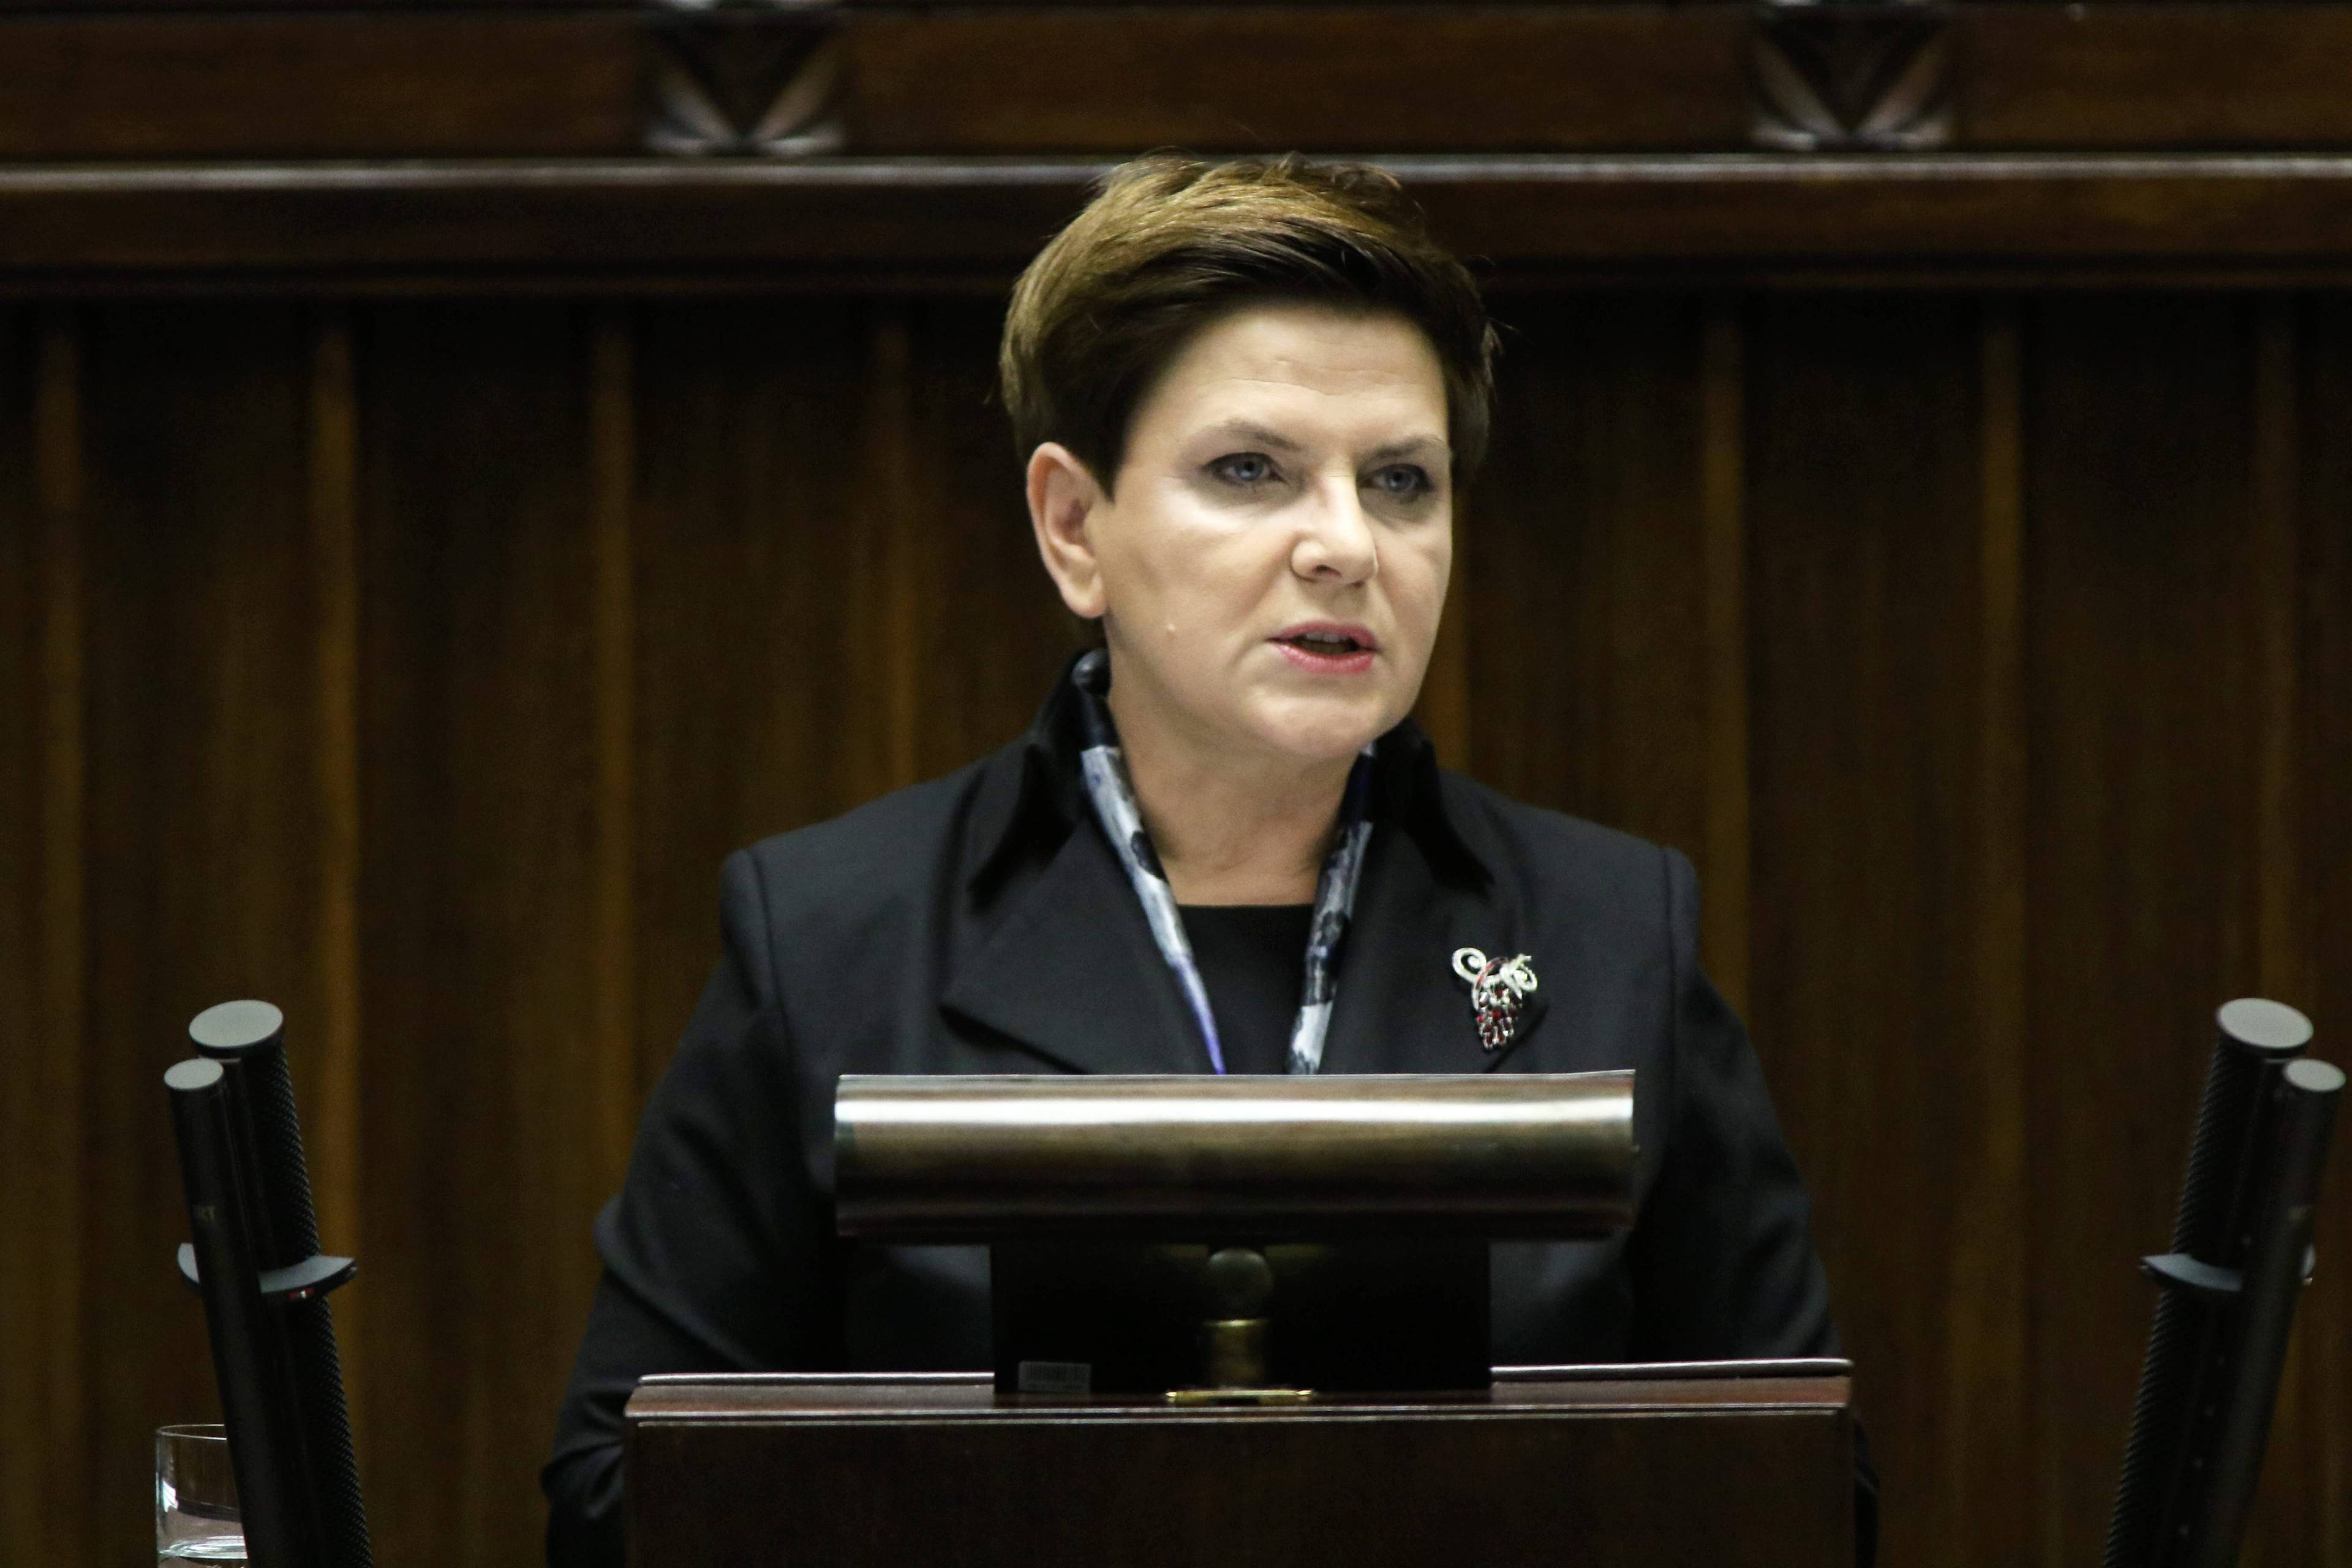 18.11.2015 Warszawa , Sejm . Premier Beata Szydlo podczas expose .
Fot . Slawomir Kaminski / Agencja Gazeta